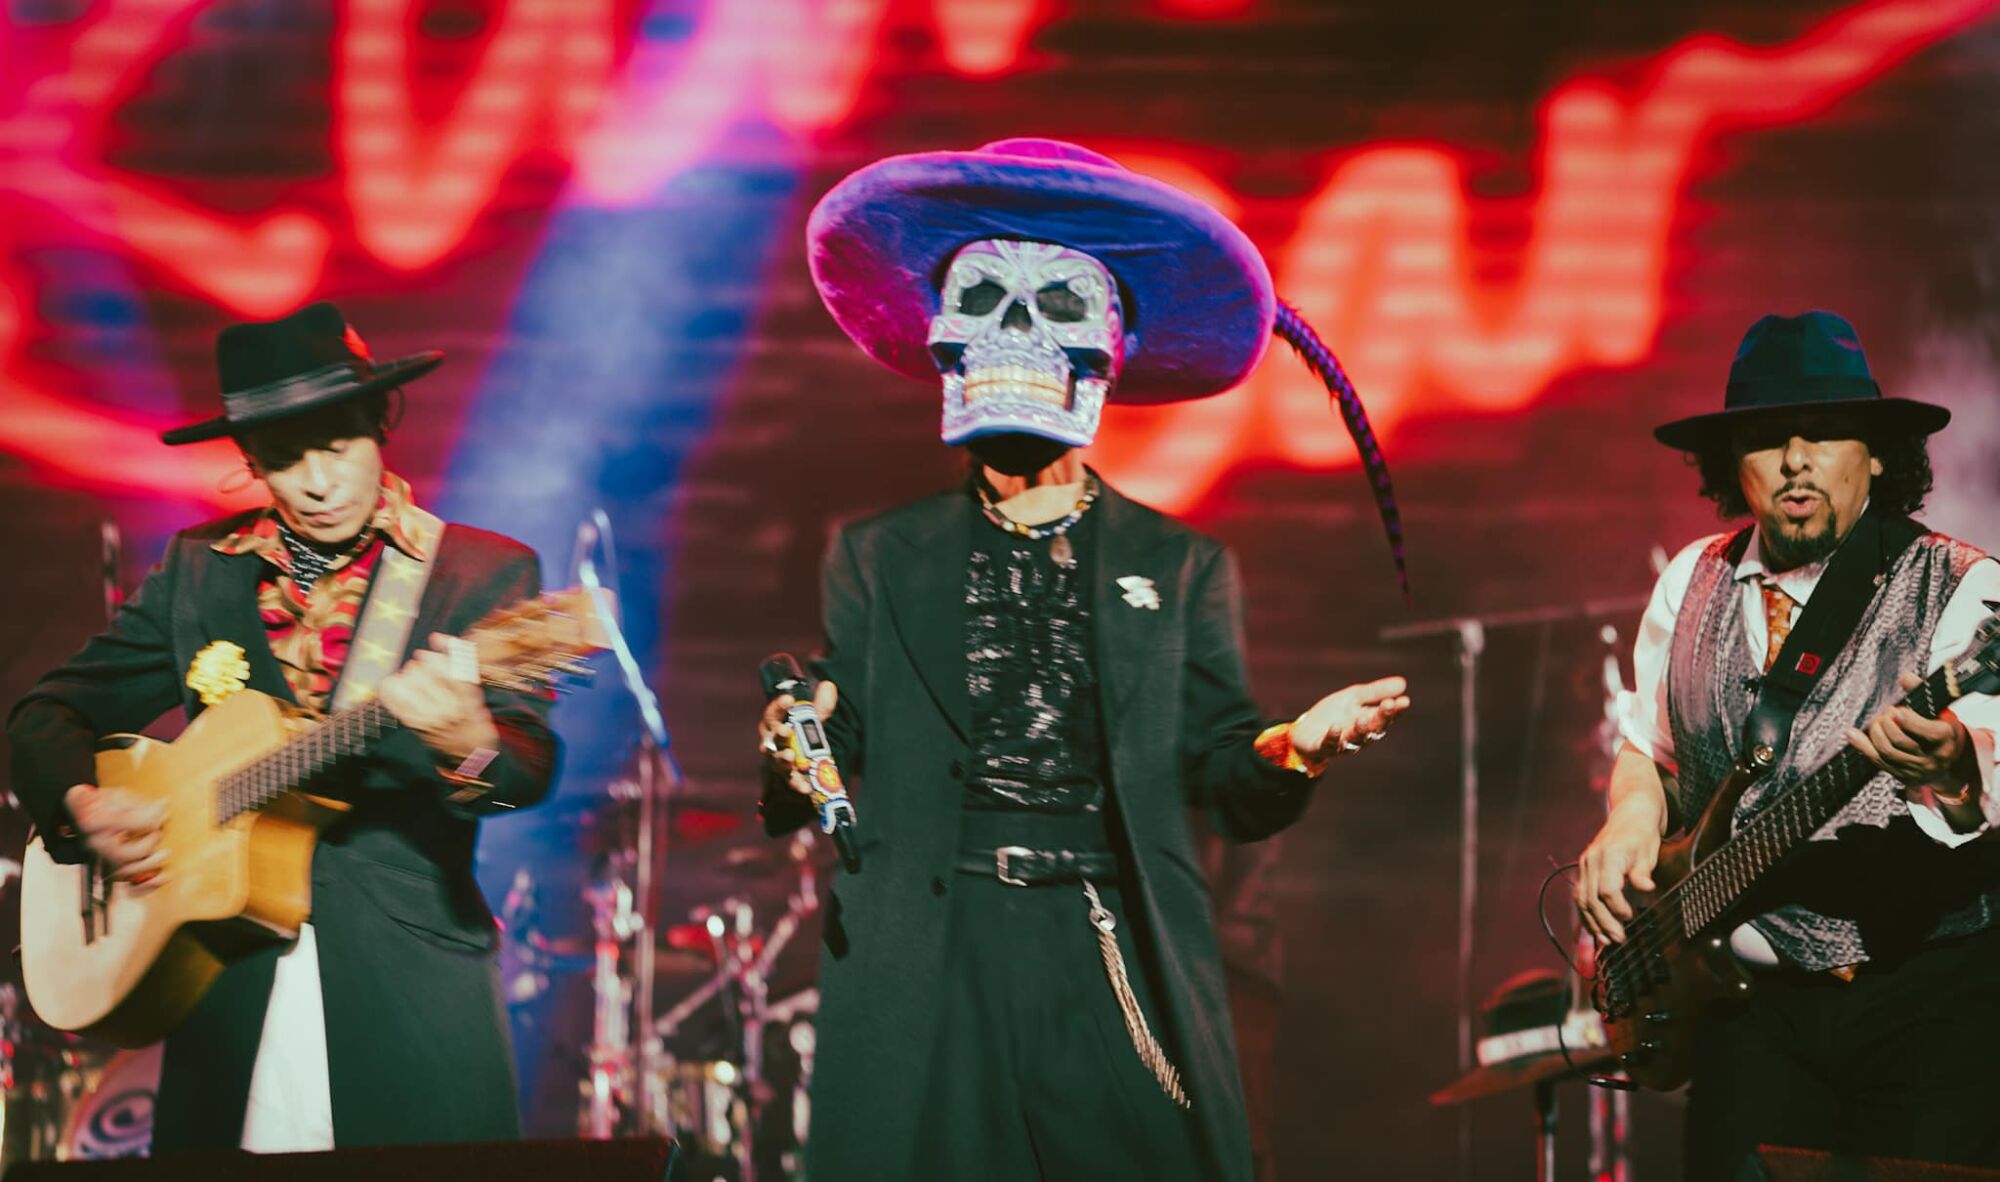 La banda durante el concierto de julio pasado en el Zócalo de la Ciudad de México.